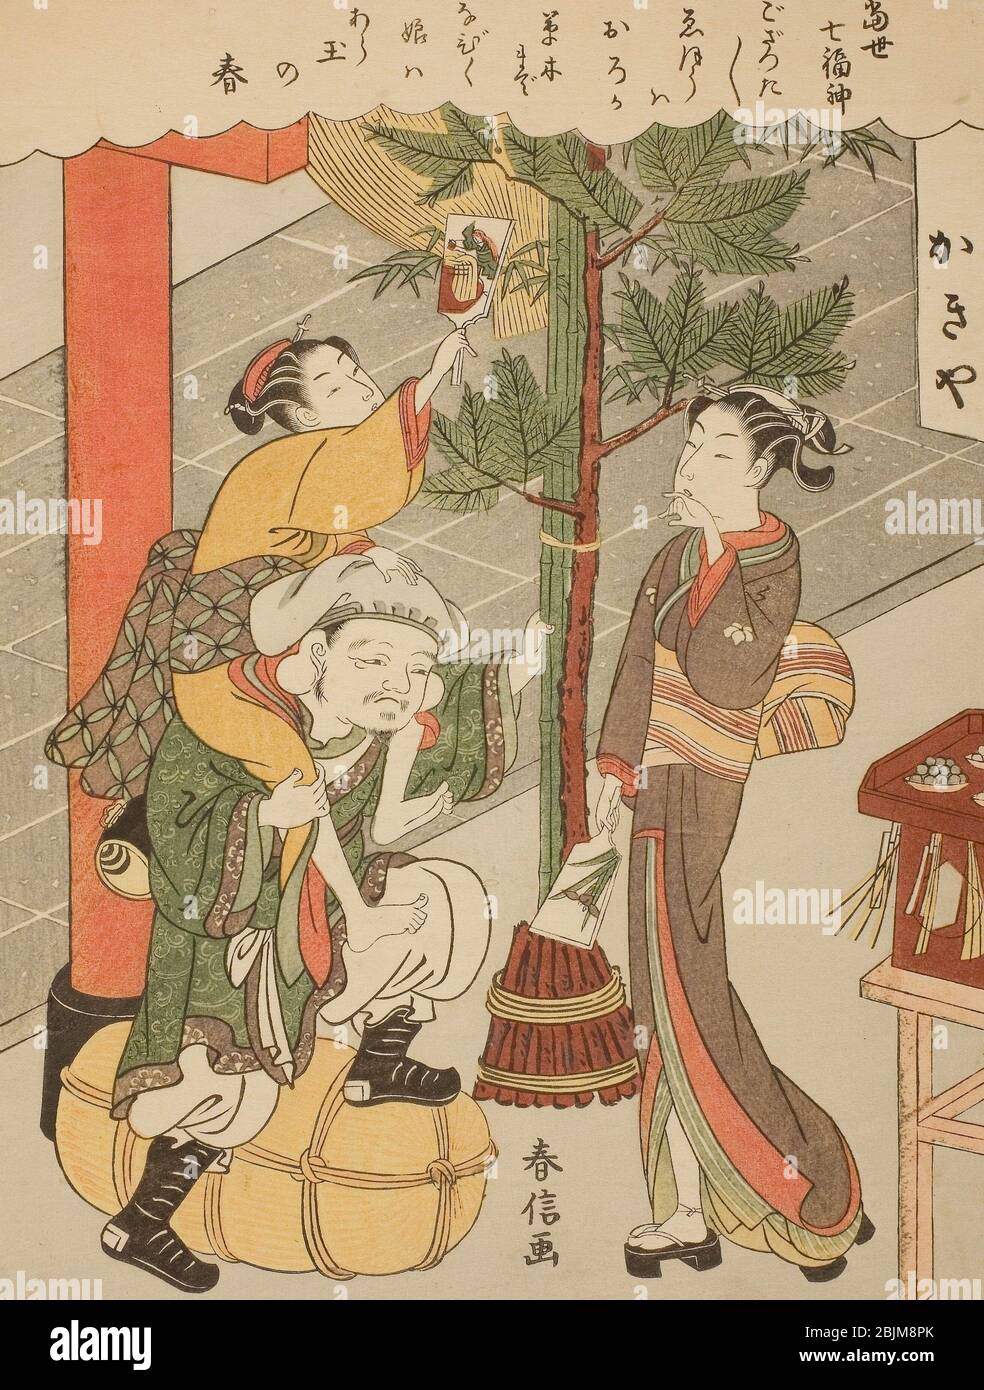 Autor: Suzuki Harunobu. Daikokuten, de la serie "los siete Dioses de buena suerte en la vida moderna (Tosei Shichi Fukujin)" - c. 1769 - Suzuki Harunobu Foto de stock